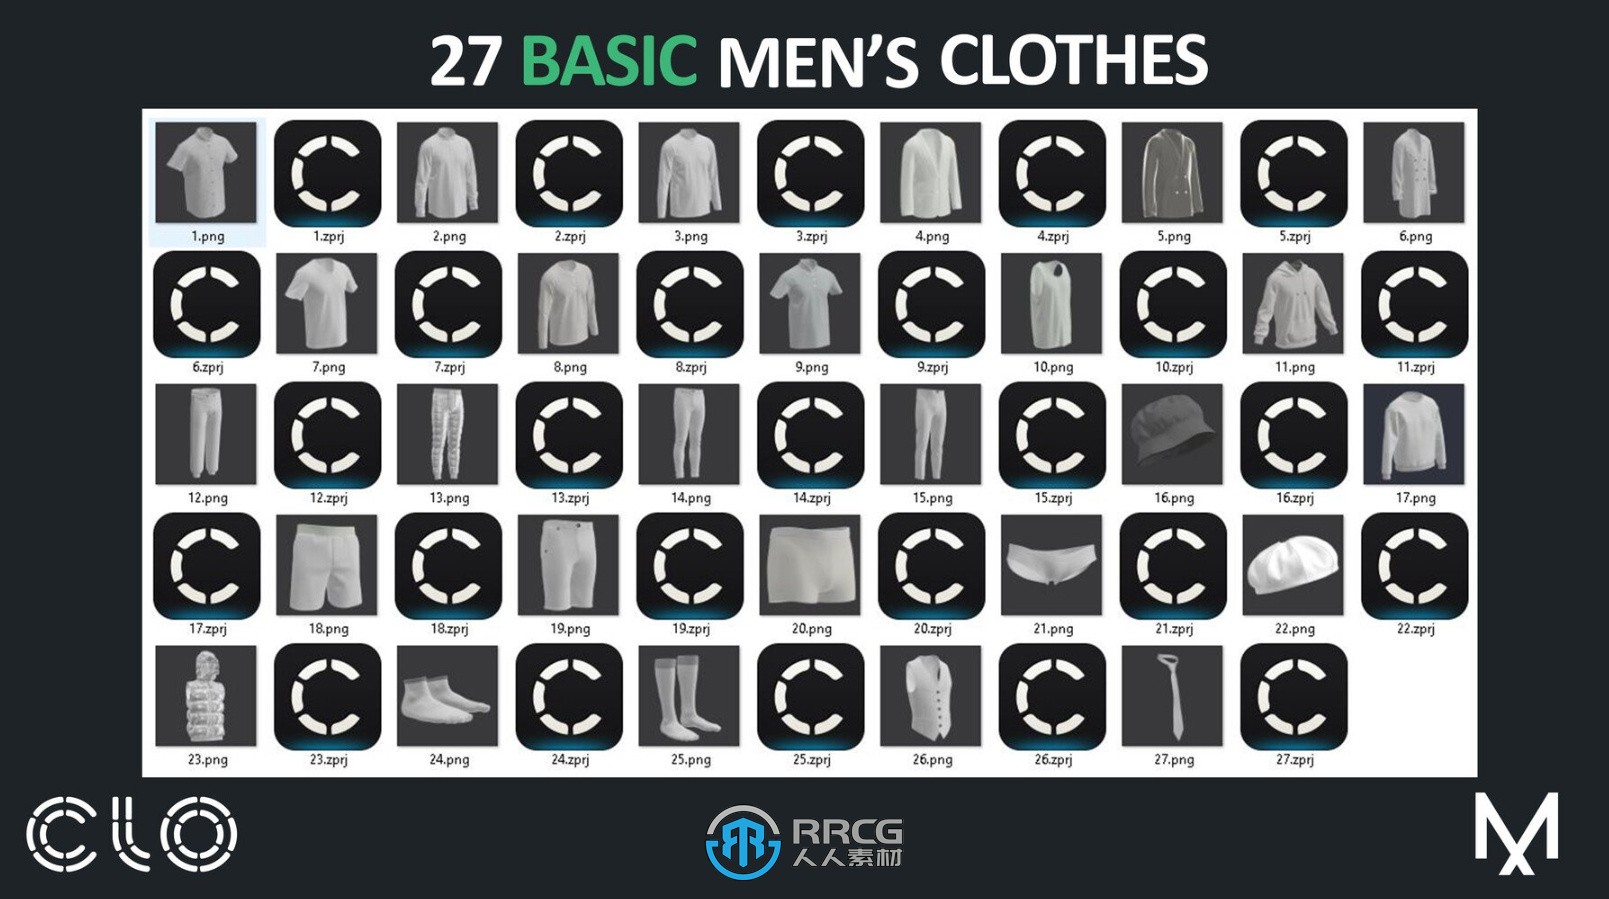 27组男性男士服装3D模型合集 MD与Clo3D软件专用